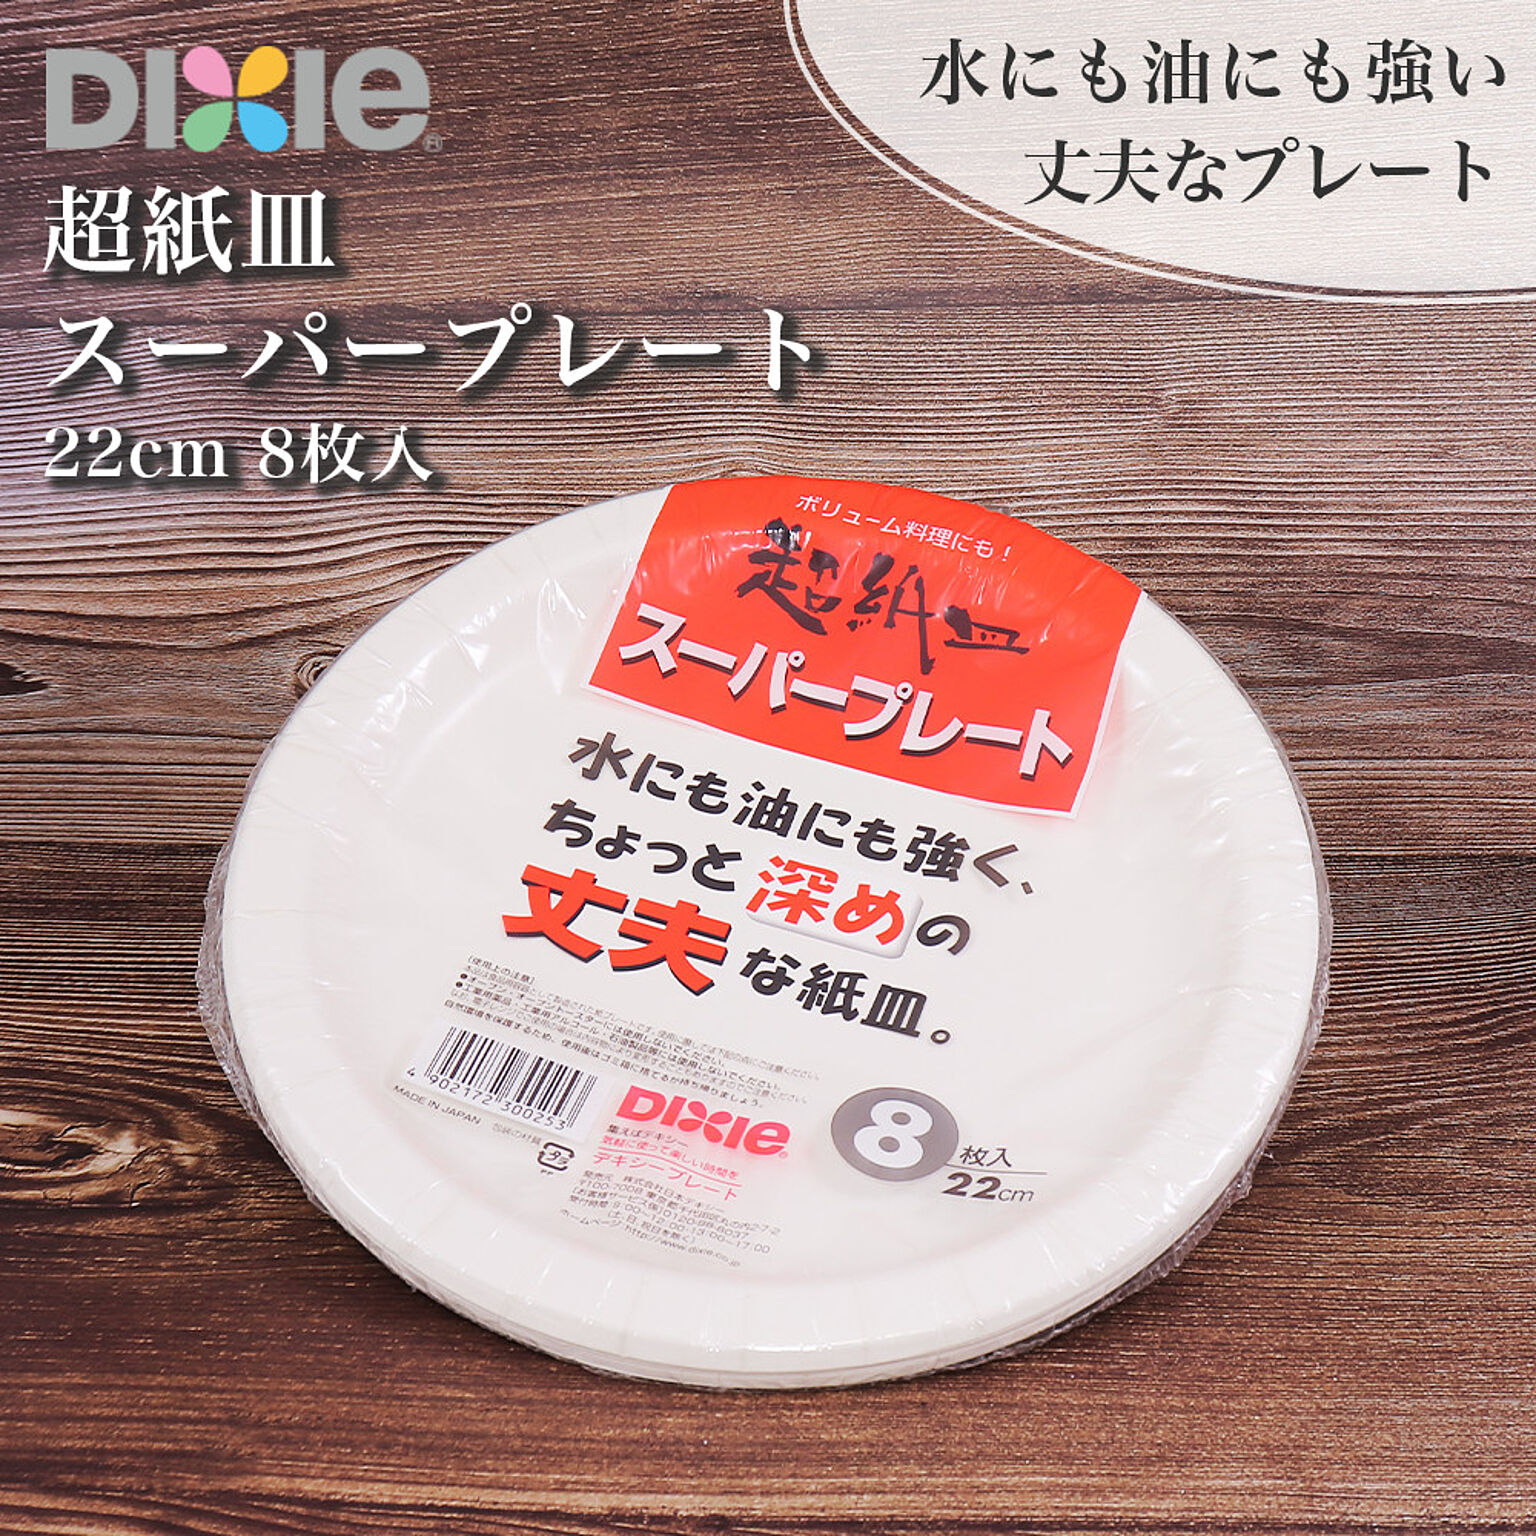 紙皿 スーパープレート KPH089SP 直径22cm 8枚 日本デキシー ホワイト 白 シンプル 柄なし 丈夫 耐水 耐油